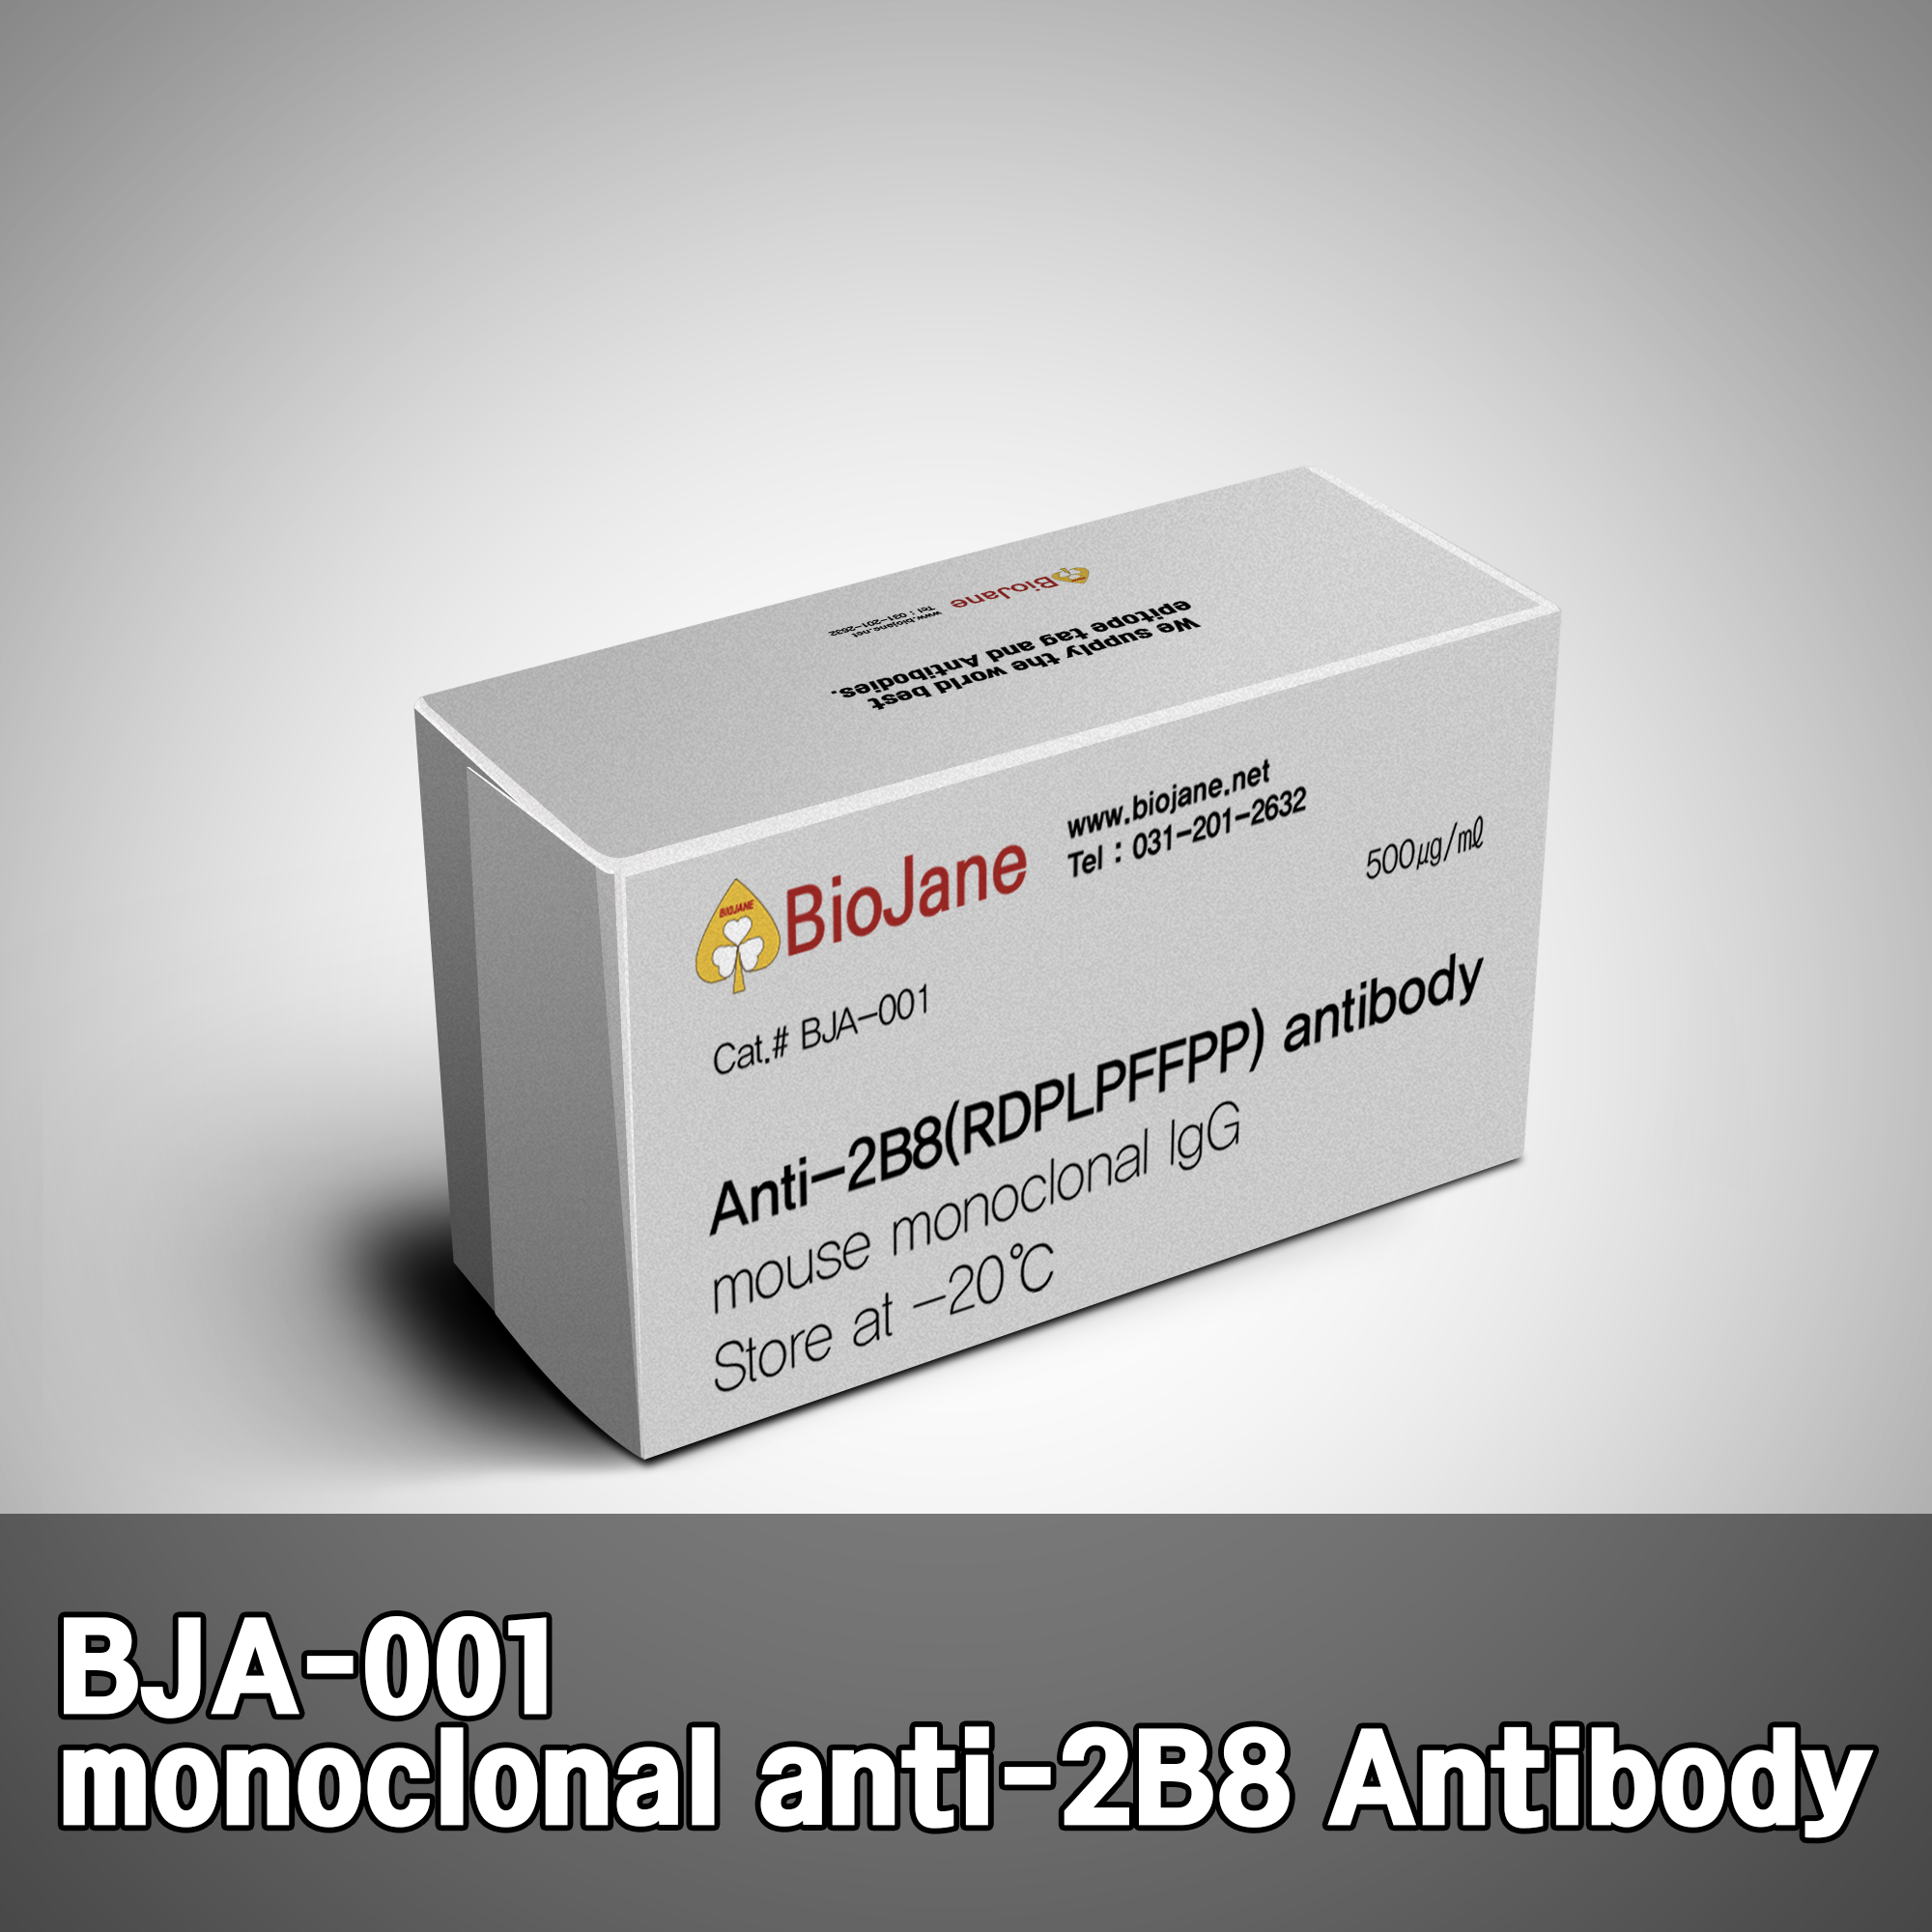 [항체] Anti-2B8 antibody, monoclonal